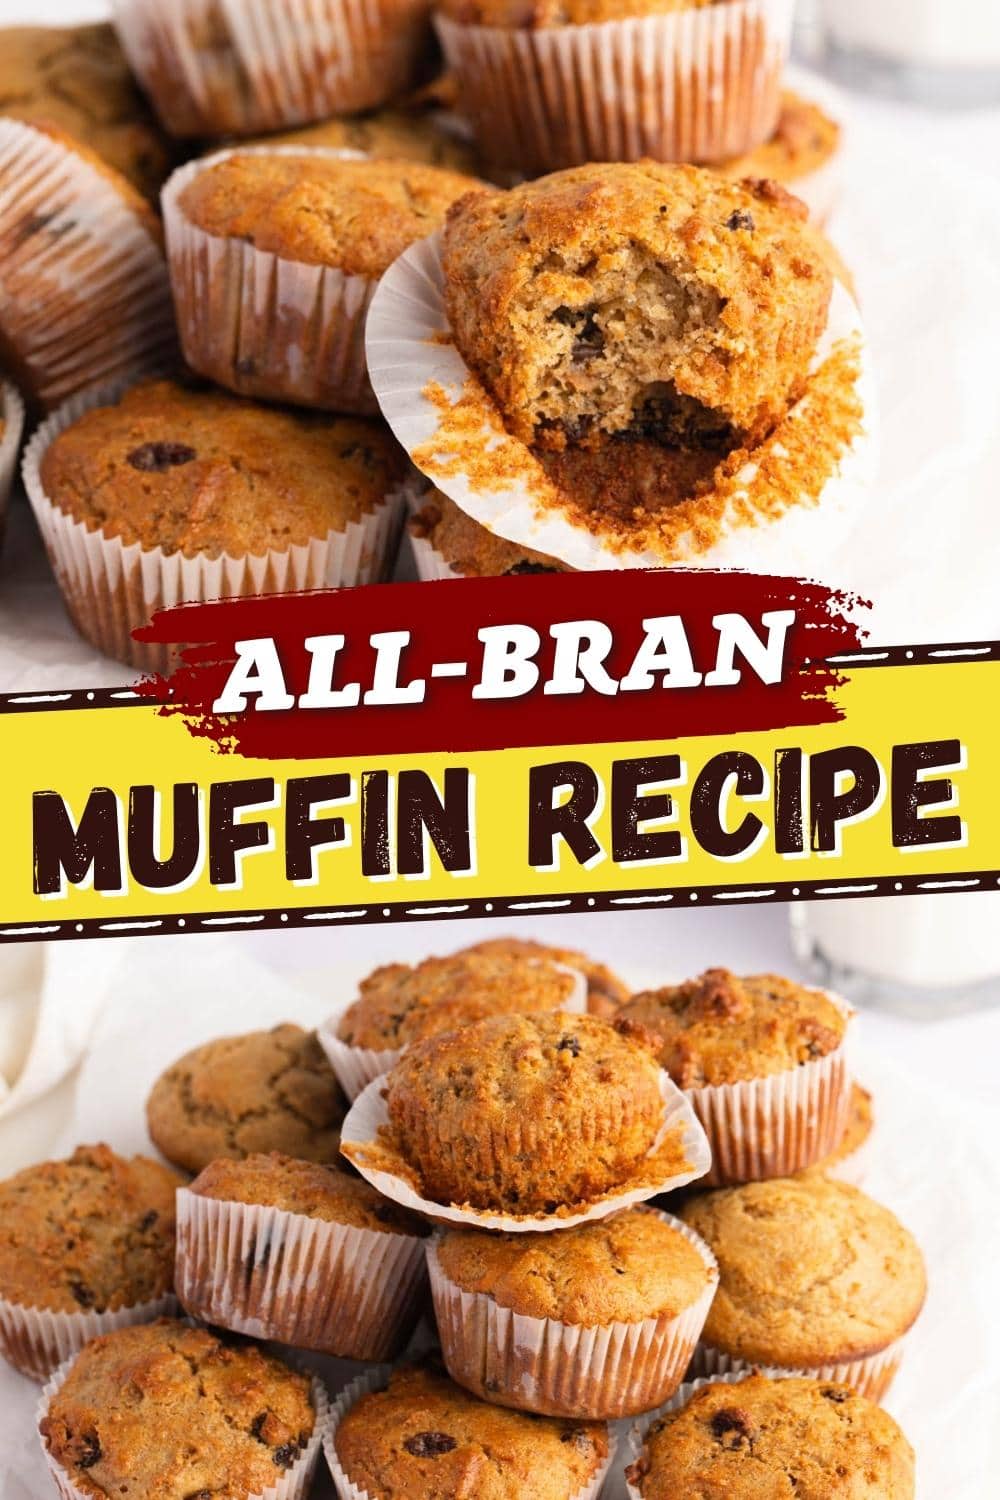 All-Bran Muffin Recipe